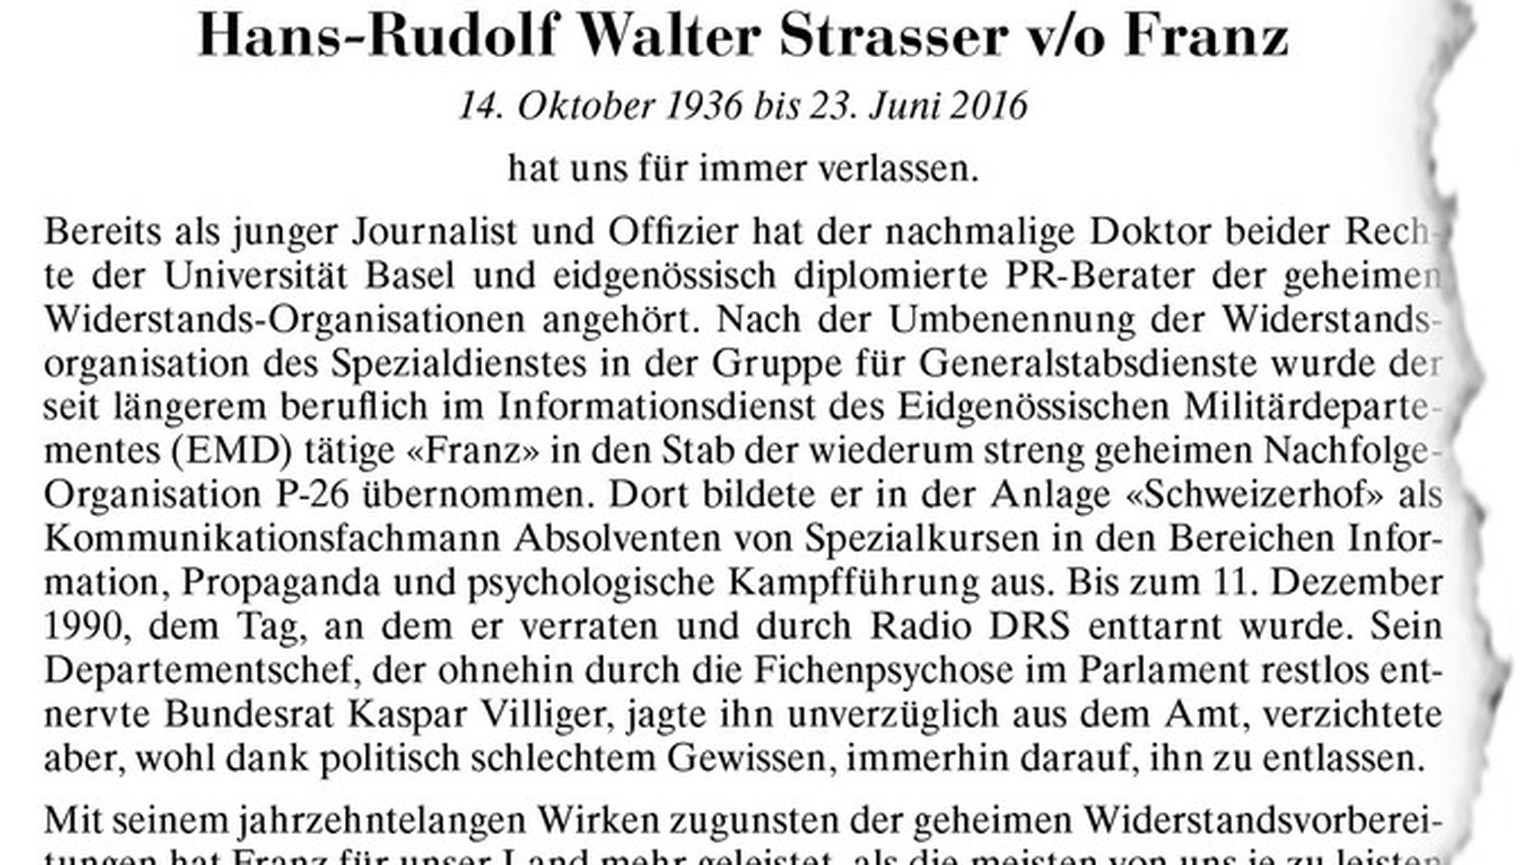 Die Todesanzeige von Hans-Rudolf Walter Strasser v/o Franz.